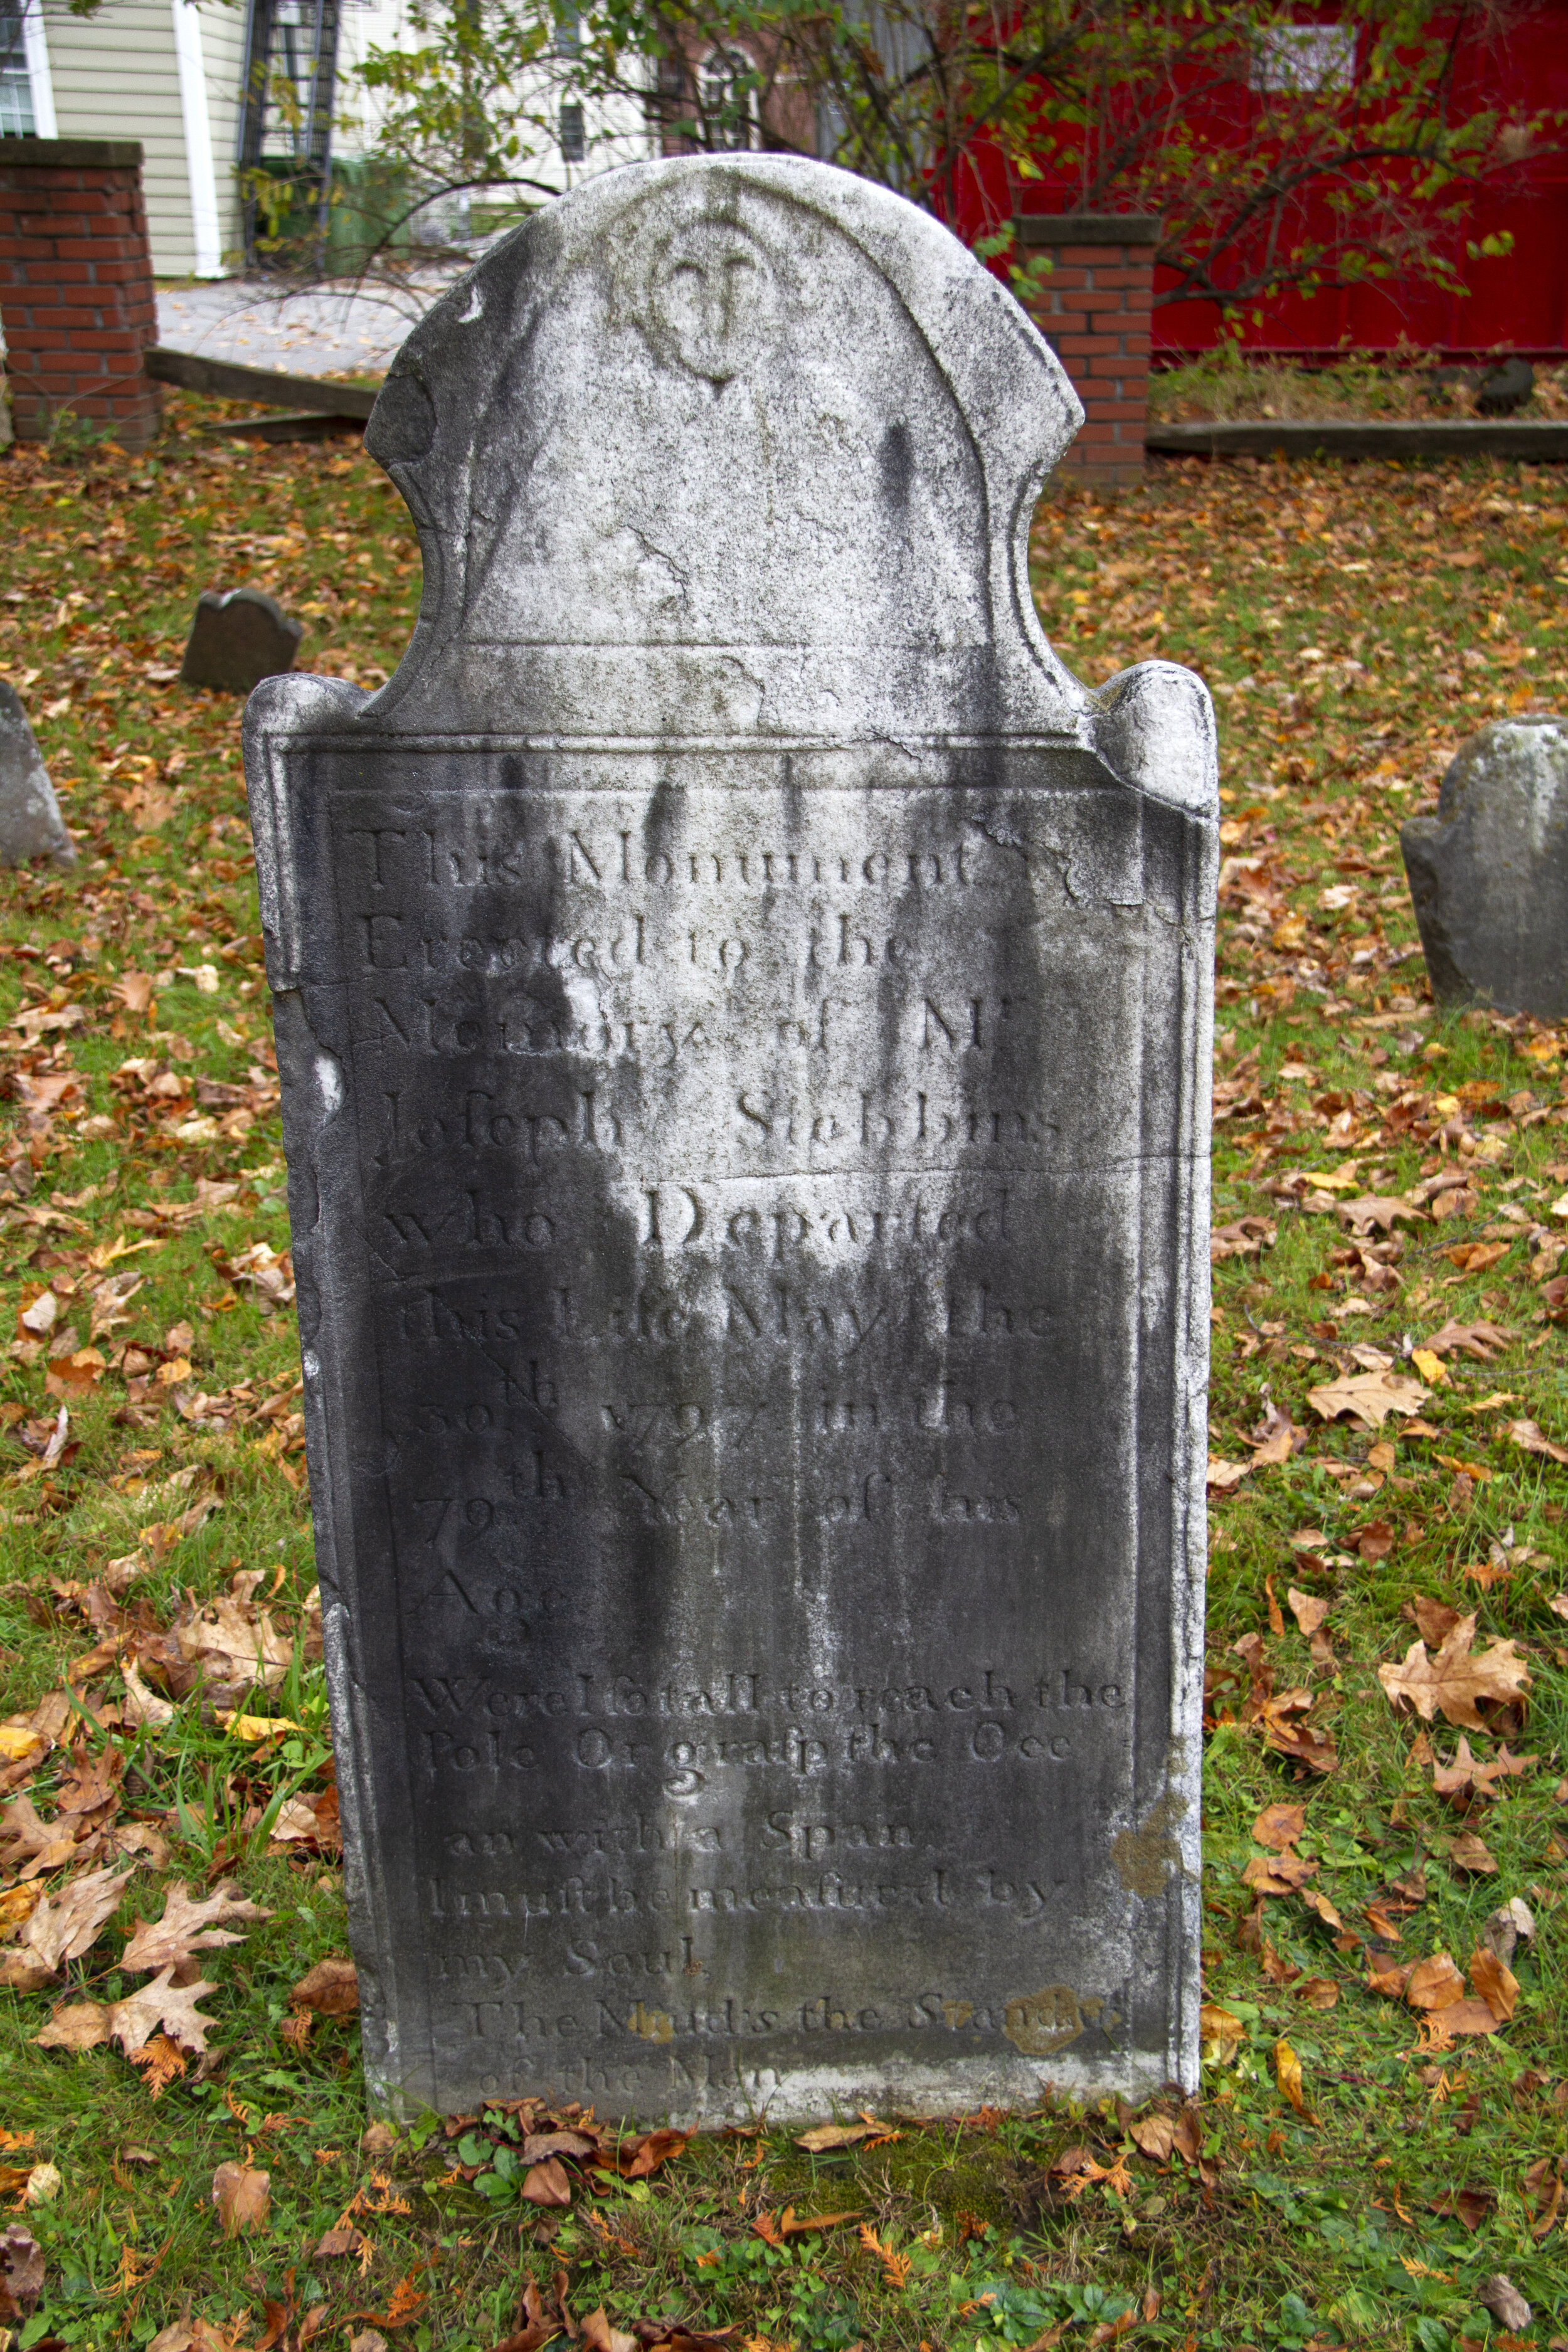 Stebbins Tombstone, Deerfield Old Burying Ground